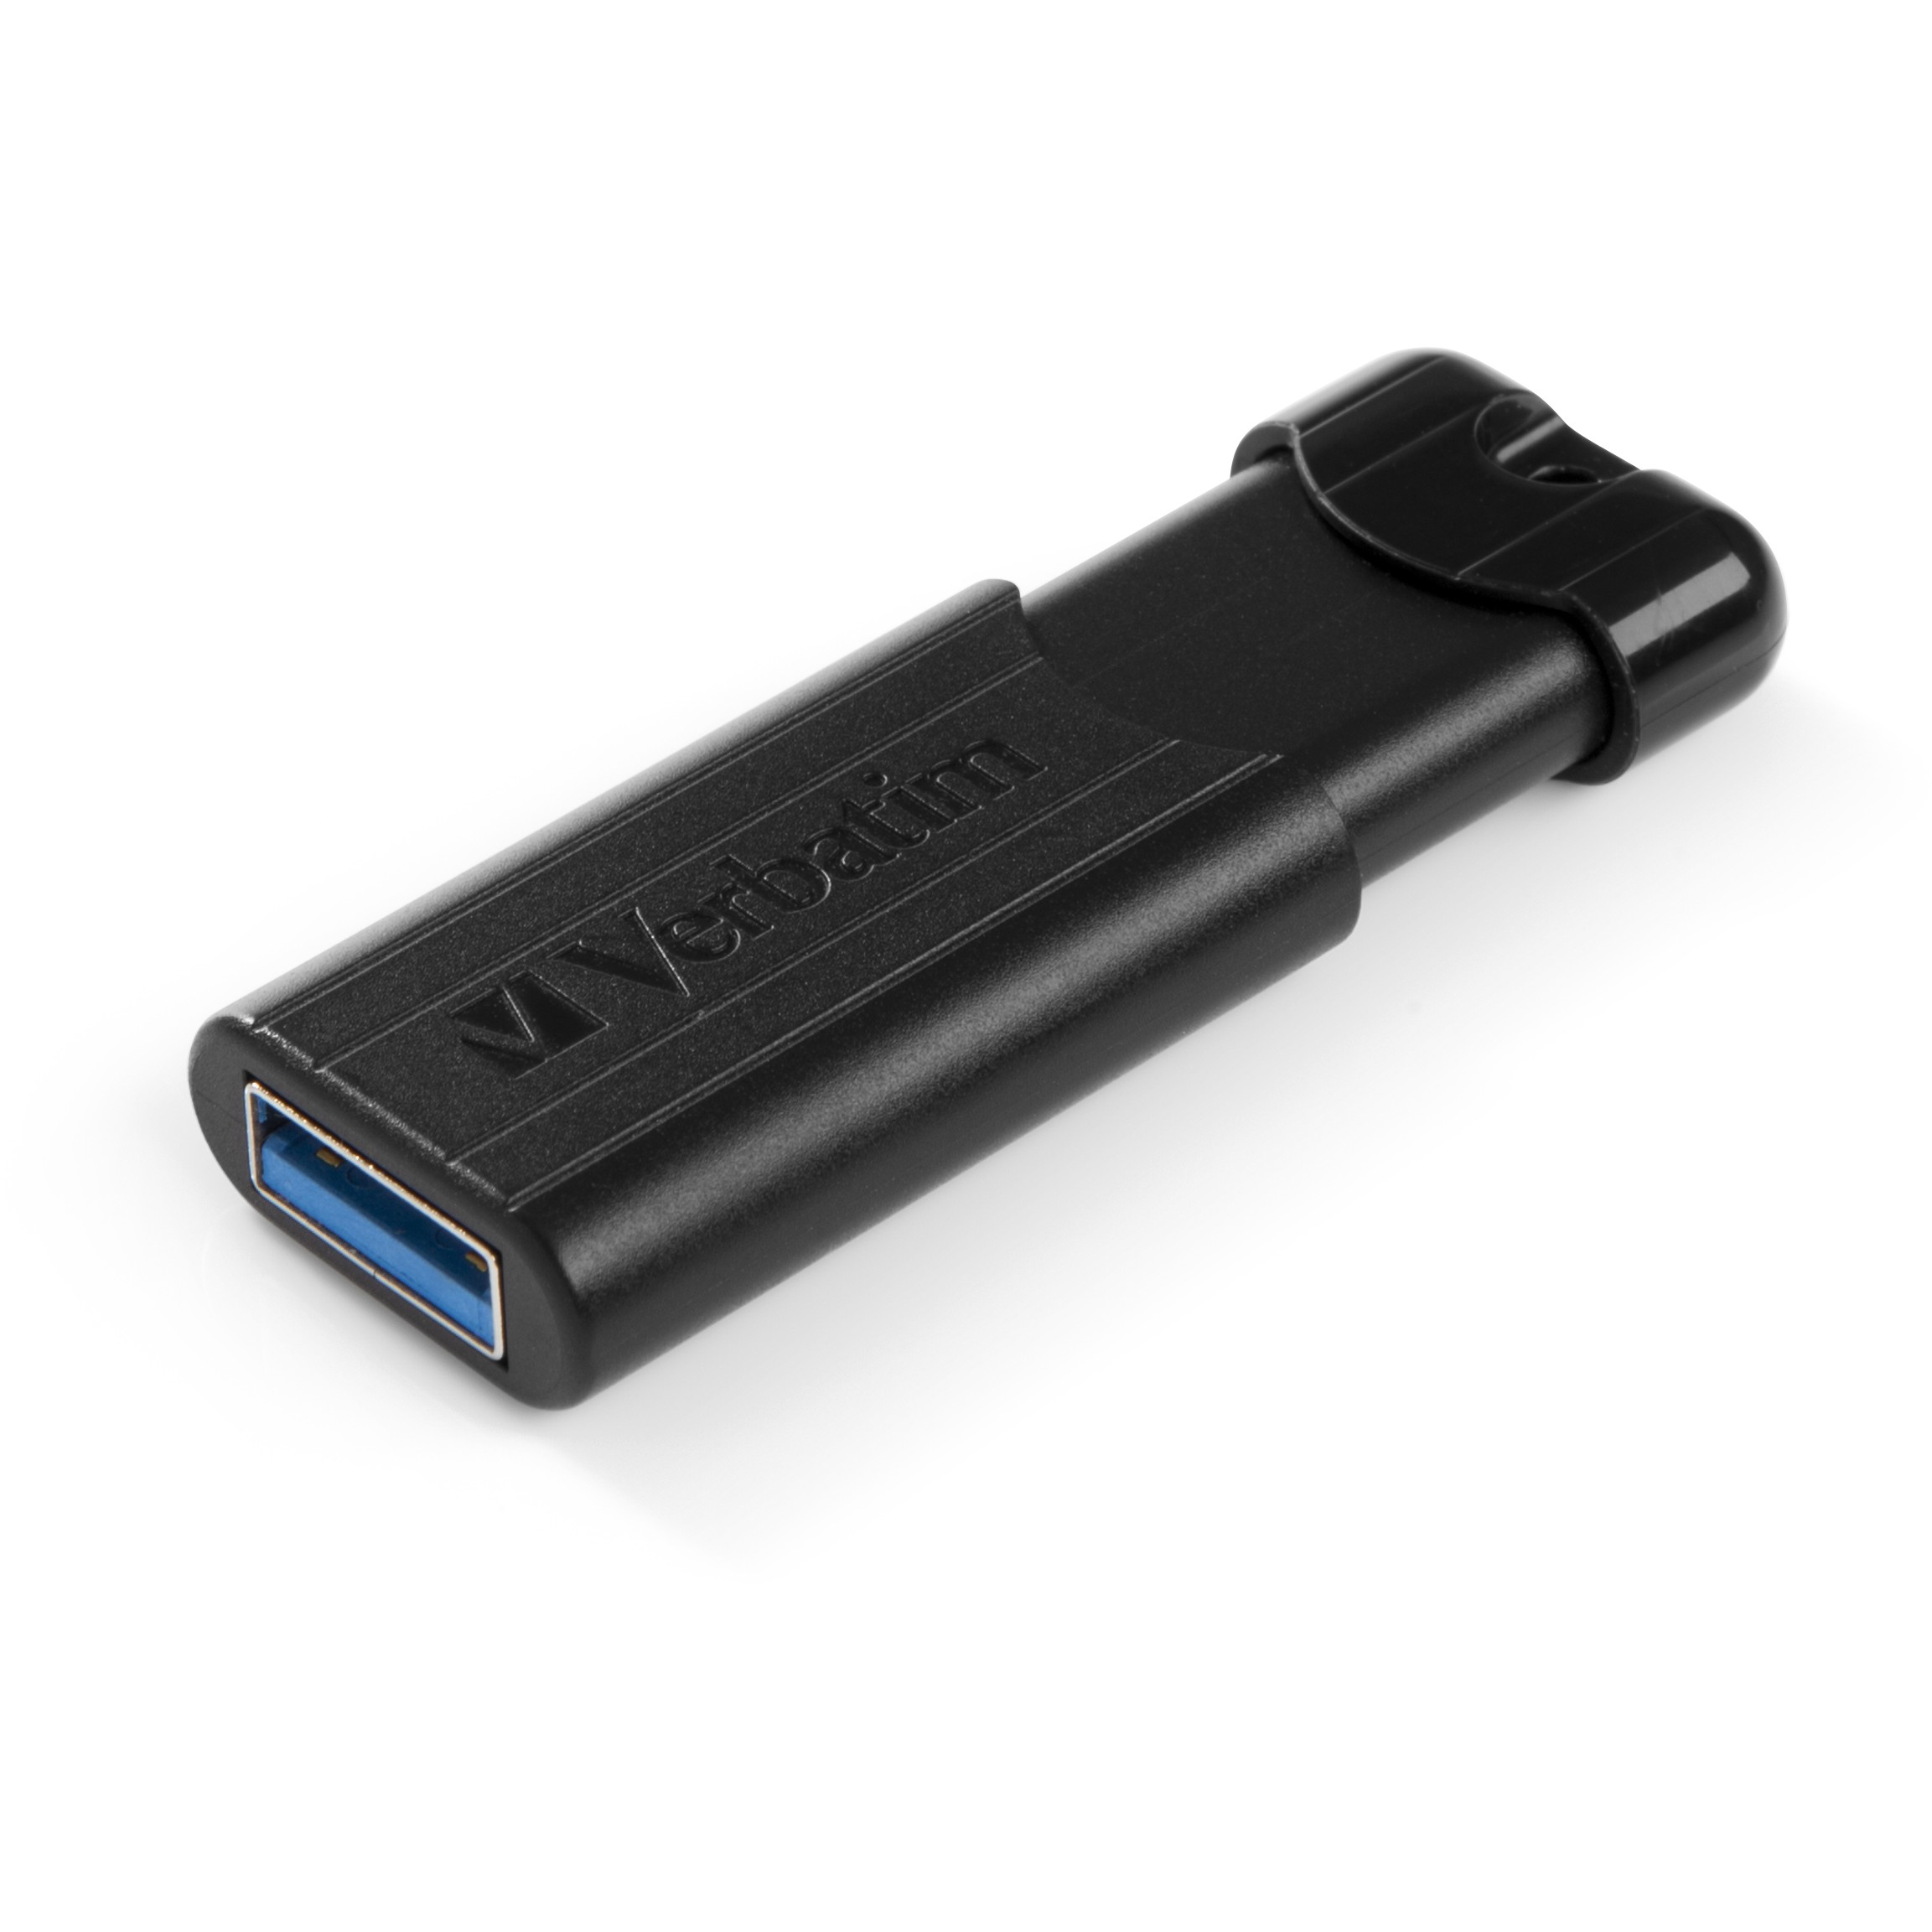 Verbatim PinStripe USB flash drive